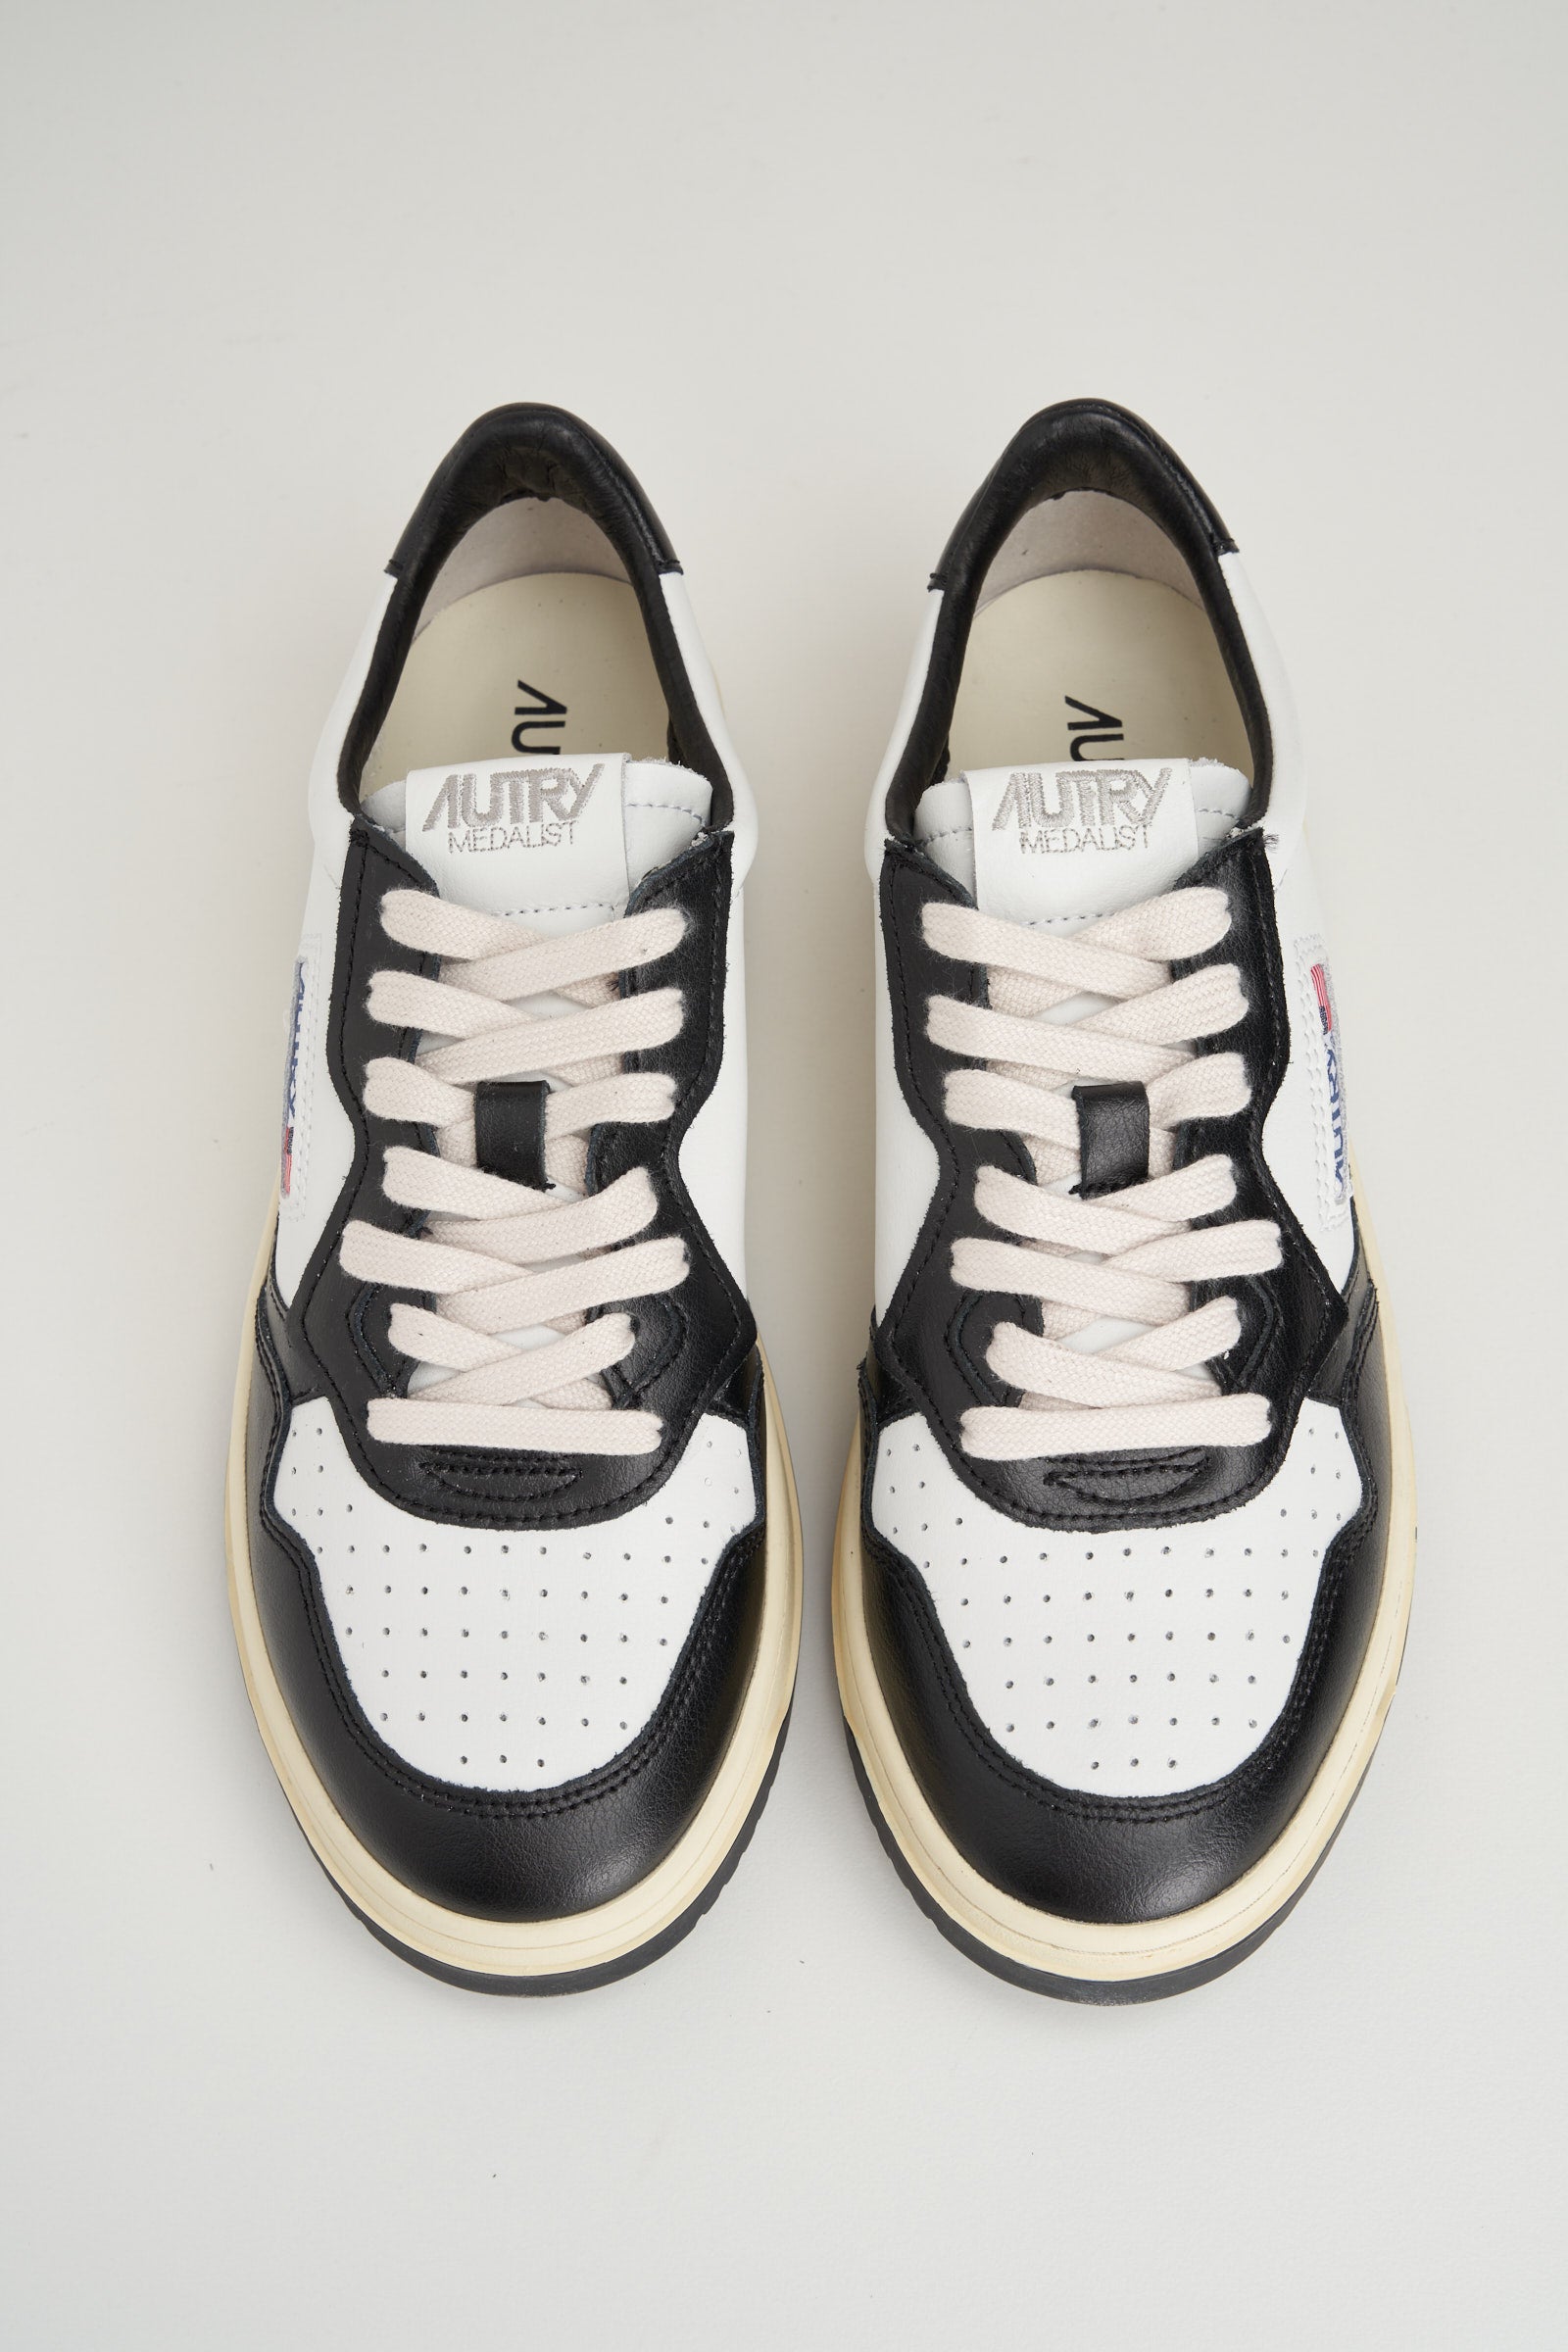  Autry Sneaker Nero E Bianco Uomo - 4